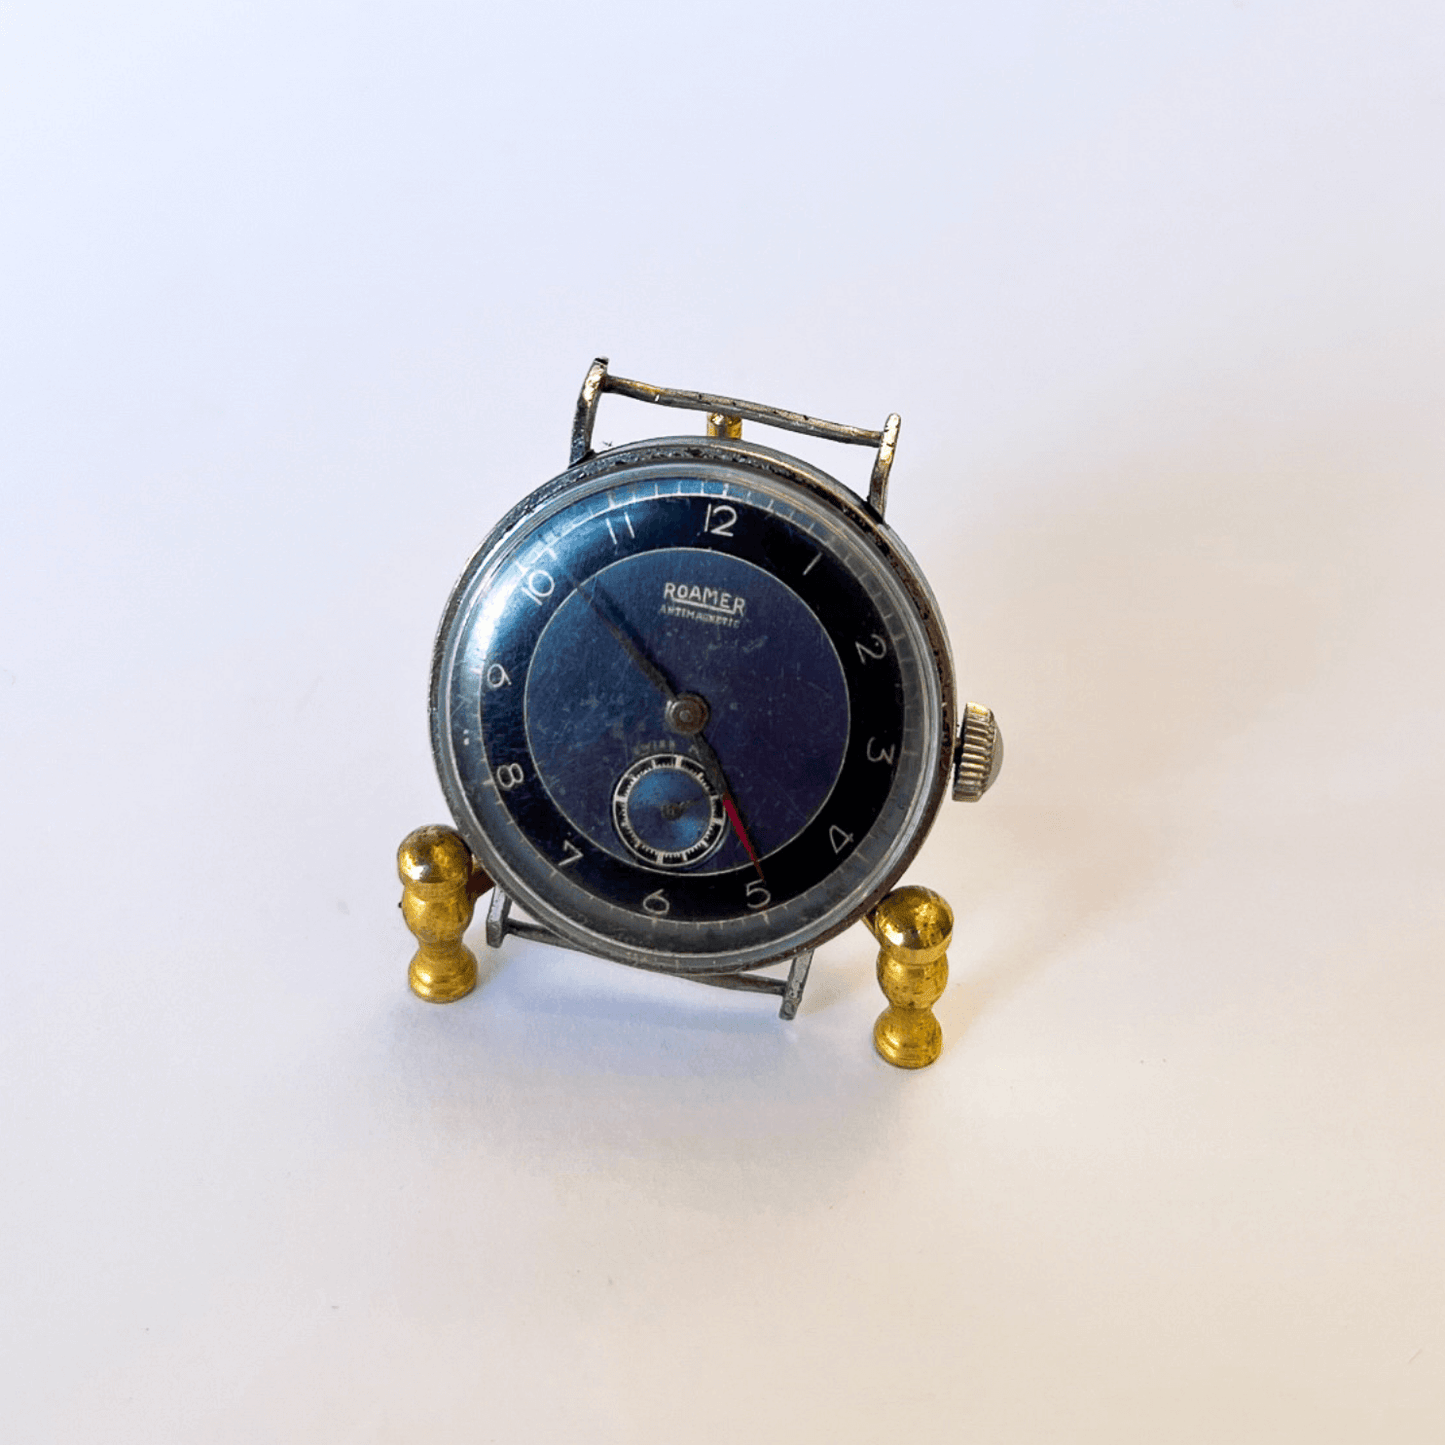 Relógio Militar Suíço Roamer dos anos 1930